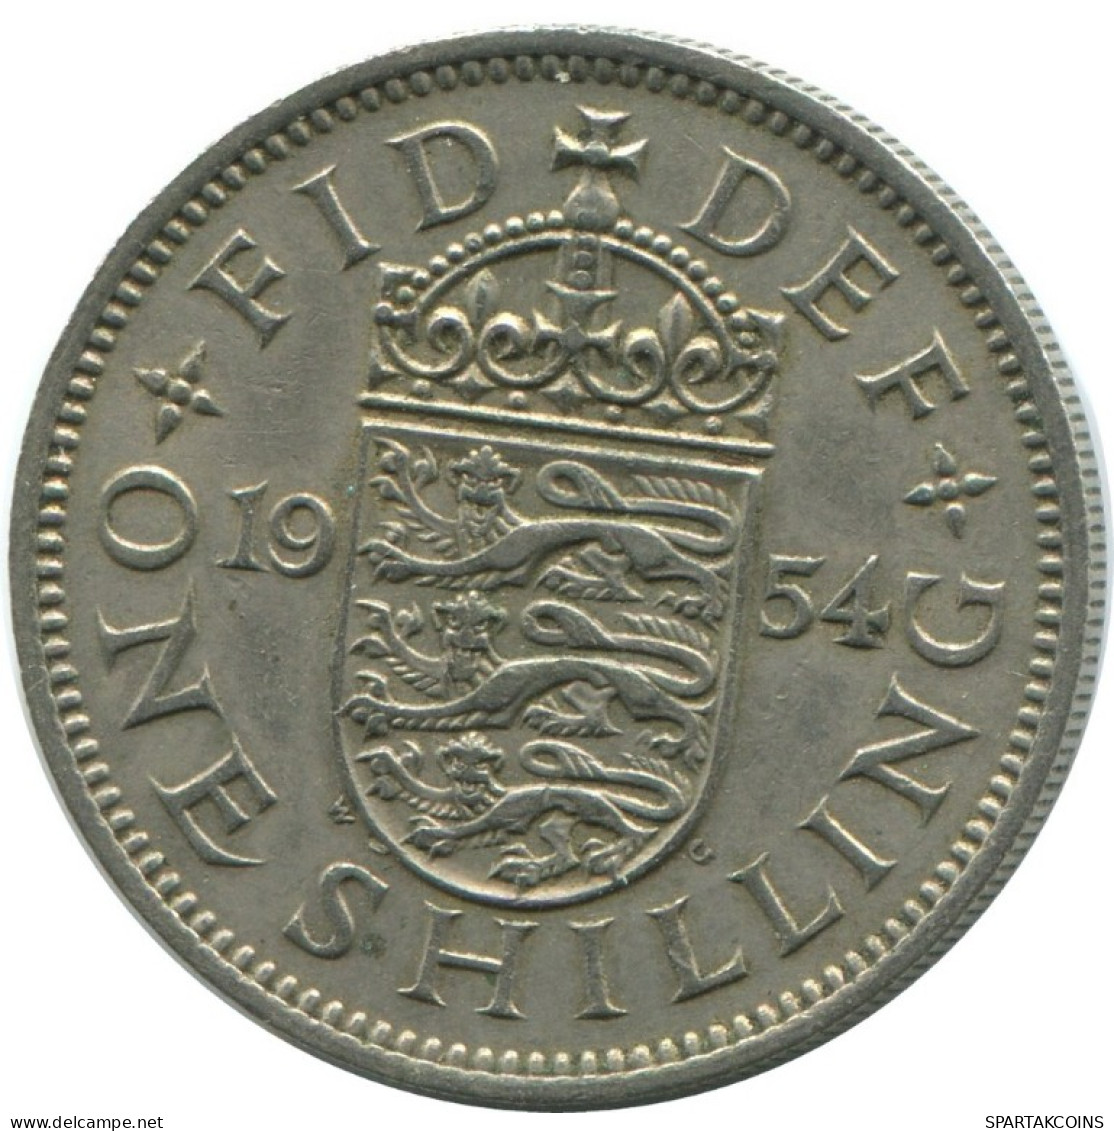 SHILLING 1954 UK GROßBRITANNIEN GREAT BRITAIN Münze #AG982.1.D.A - I. 1 Shilling